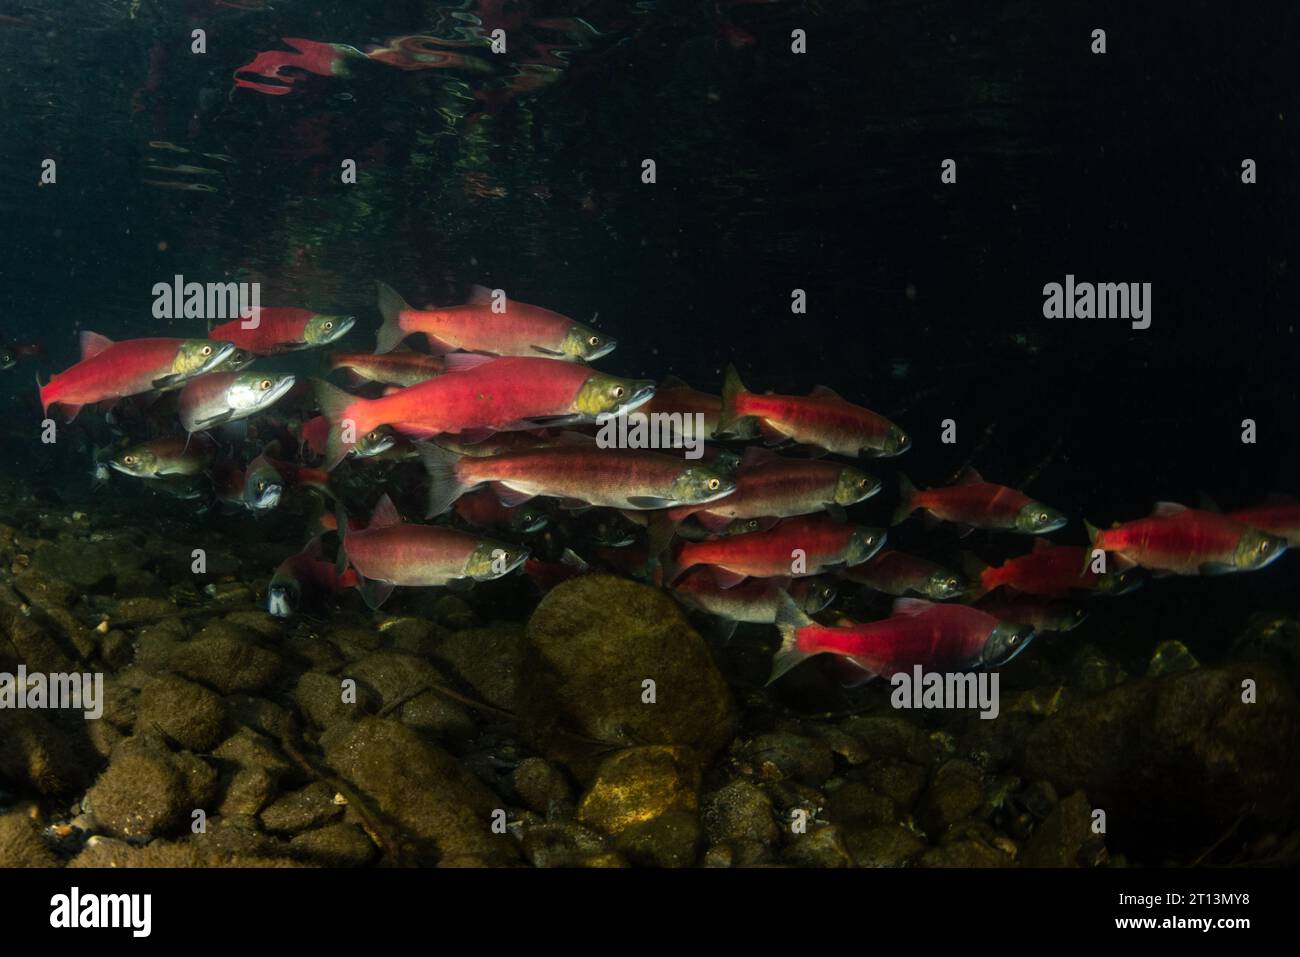 kokanee-Lachs (Oncorhynchus nerka), die Fische schwärmen zusammen und ziehen flussaufwärts zum Laichen und vervollständigen ihren Lebenszyklus. Stockfoto